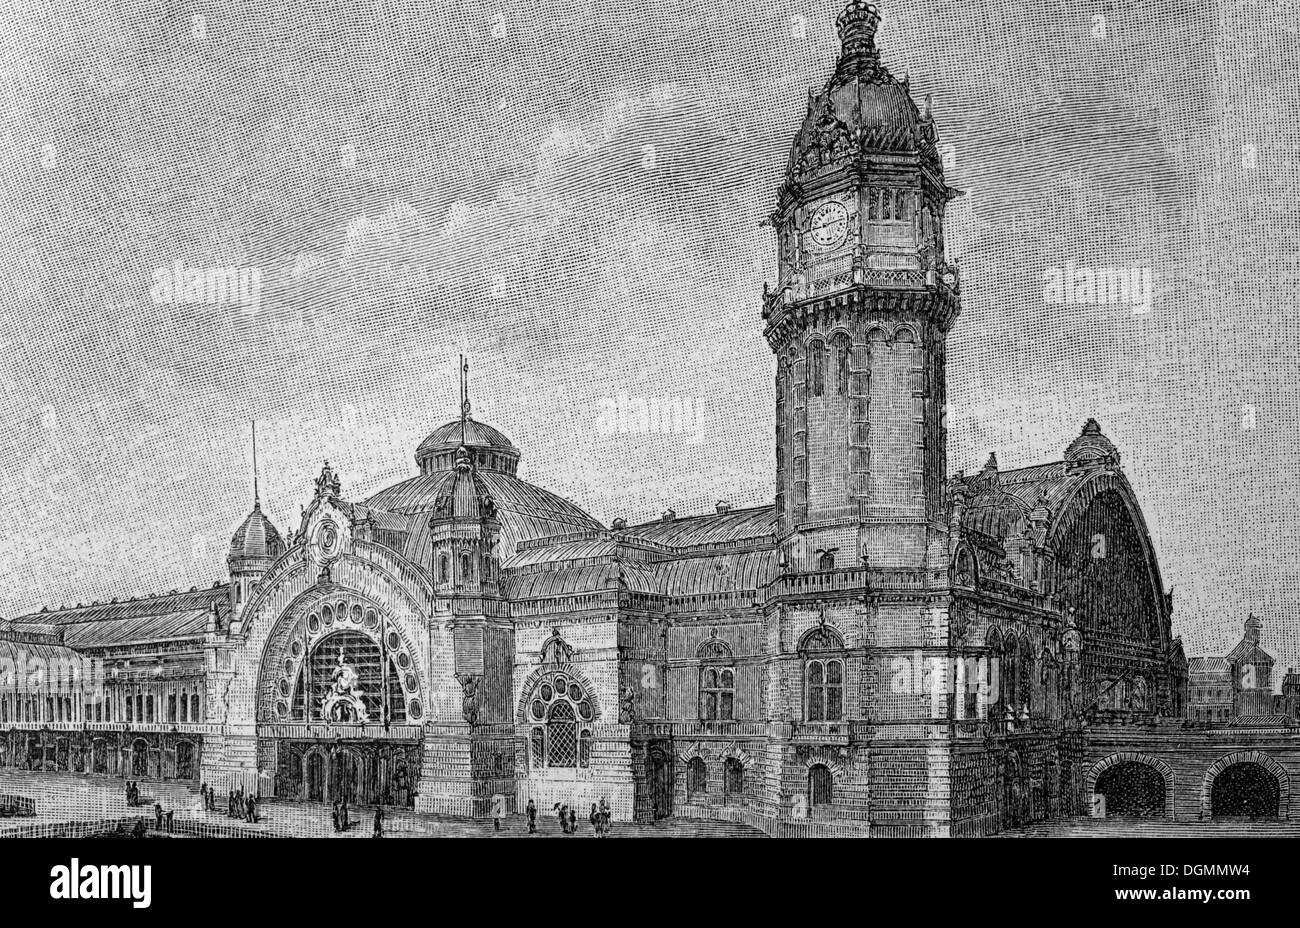 Vecchia Stazione ferroviaria centrale di Colonia, libro storico illustrazione, acciaio incisione, Brockhaus enciclopedia dal 1908 Foto Stock